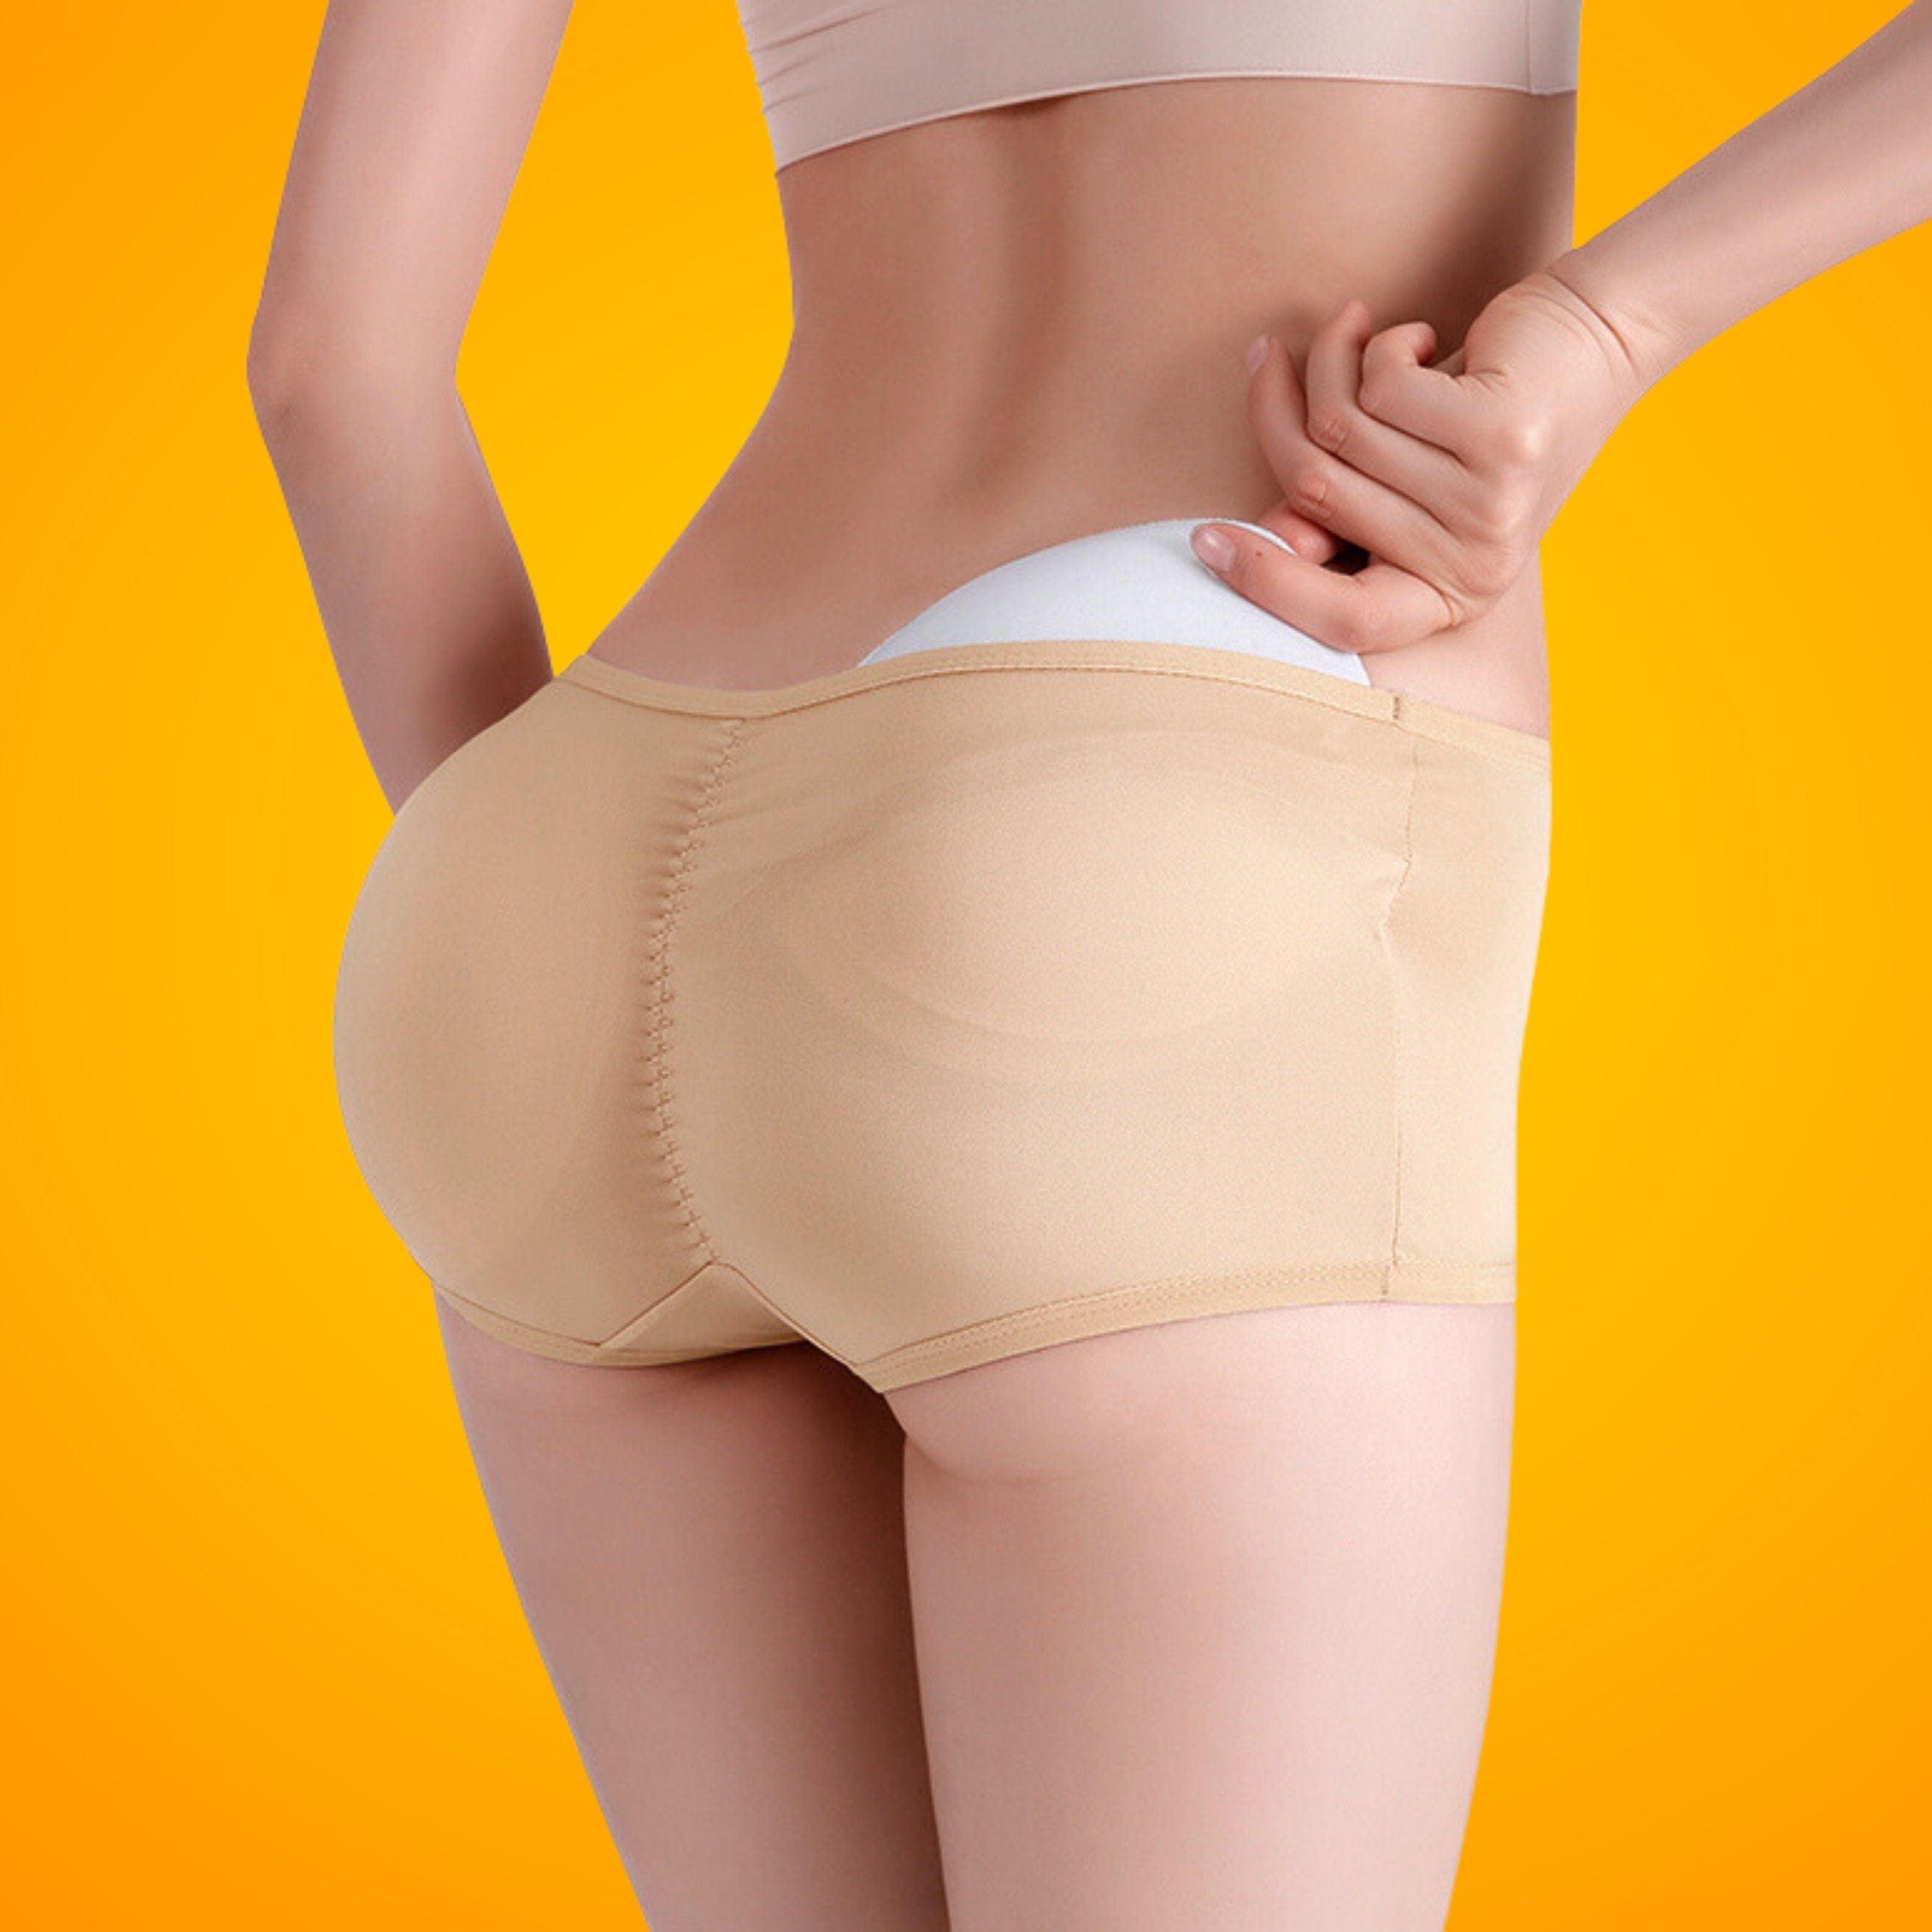 Men Padded Underwear Butt Lifter Hips Enhancer Fajas Boxer Briefs Push Up  Panty